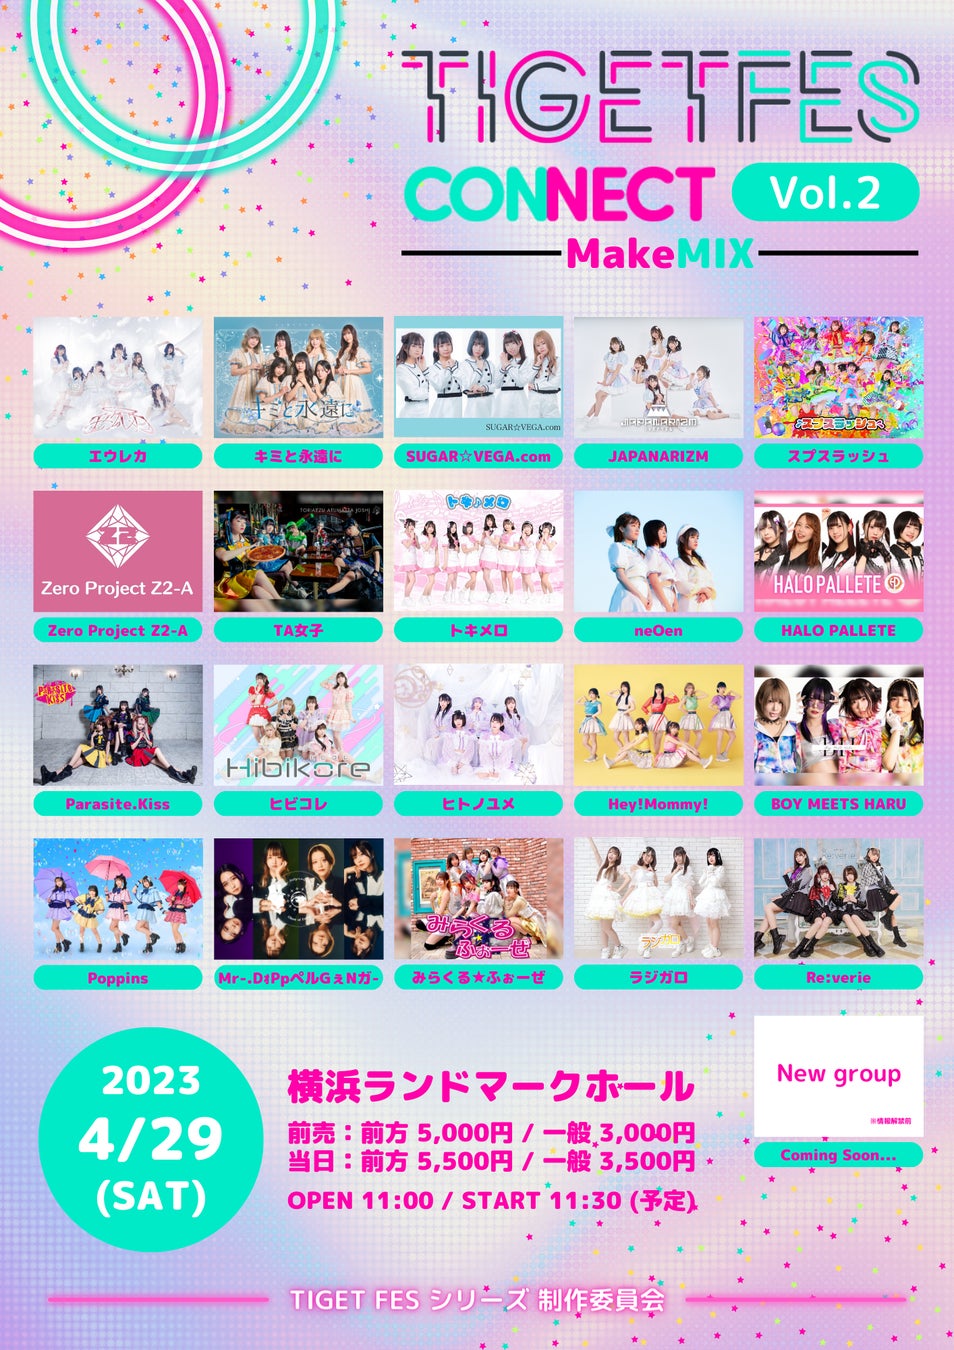 様々なジャンルのアイドルが集うアイドルフェス「TIGET FES CONNECT Vol.2 -MakeMIX-」が横浜ランドマークホールにて開催